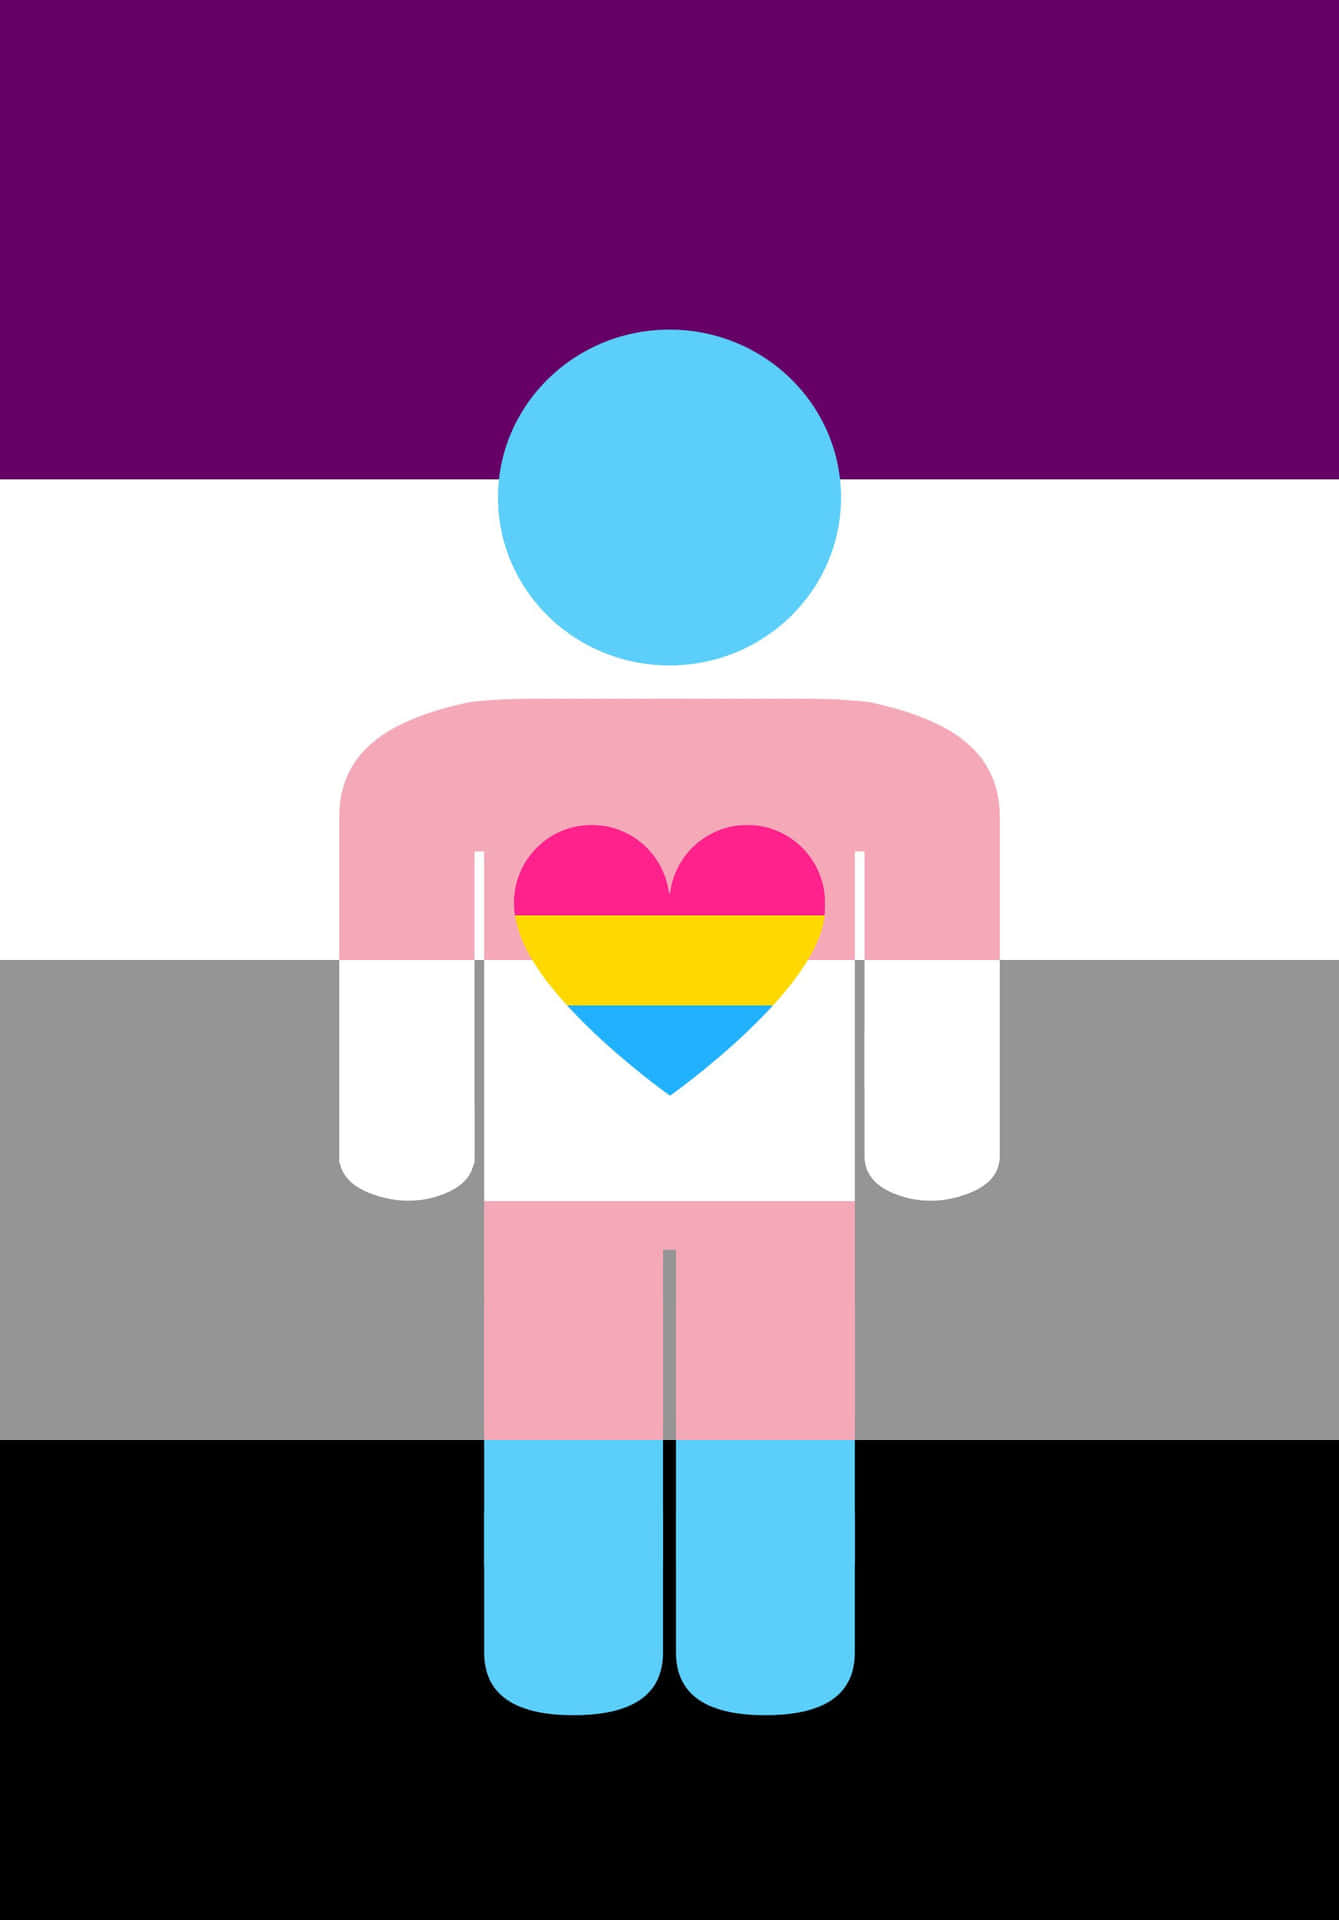 Asexuellemenschliche Andersartige Stolzflagge Wallpaper